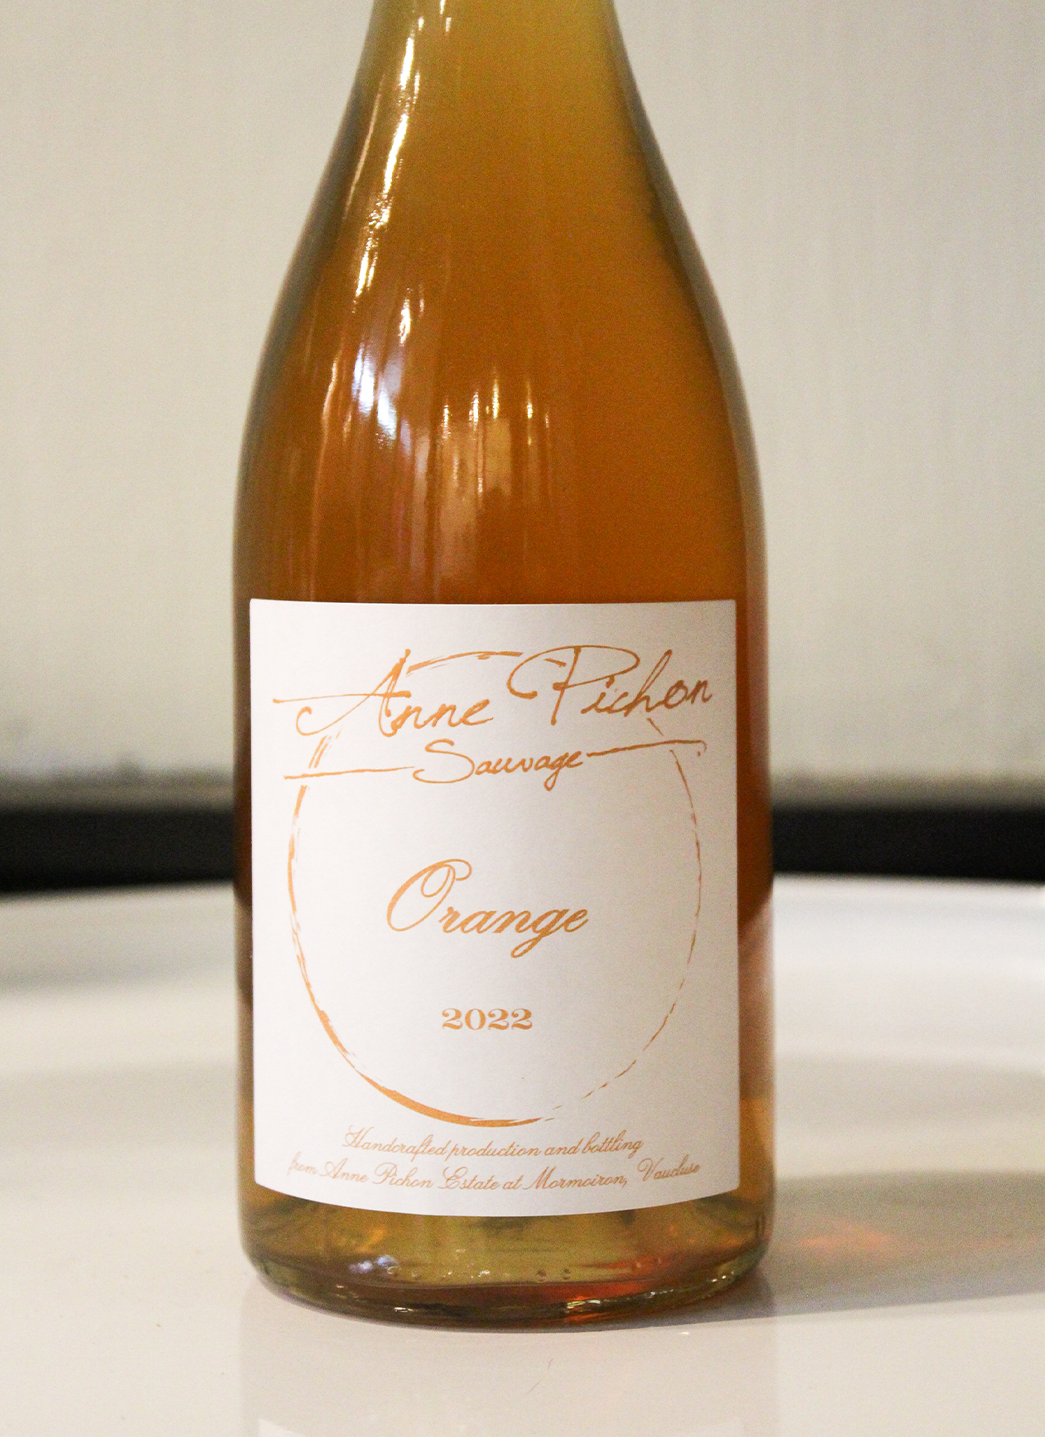 Anne Pichon Sauvage Orange Wine